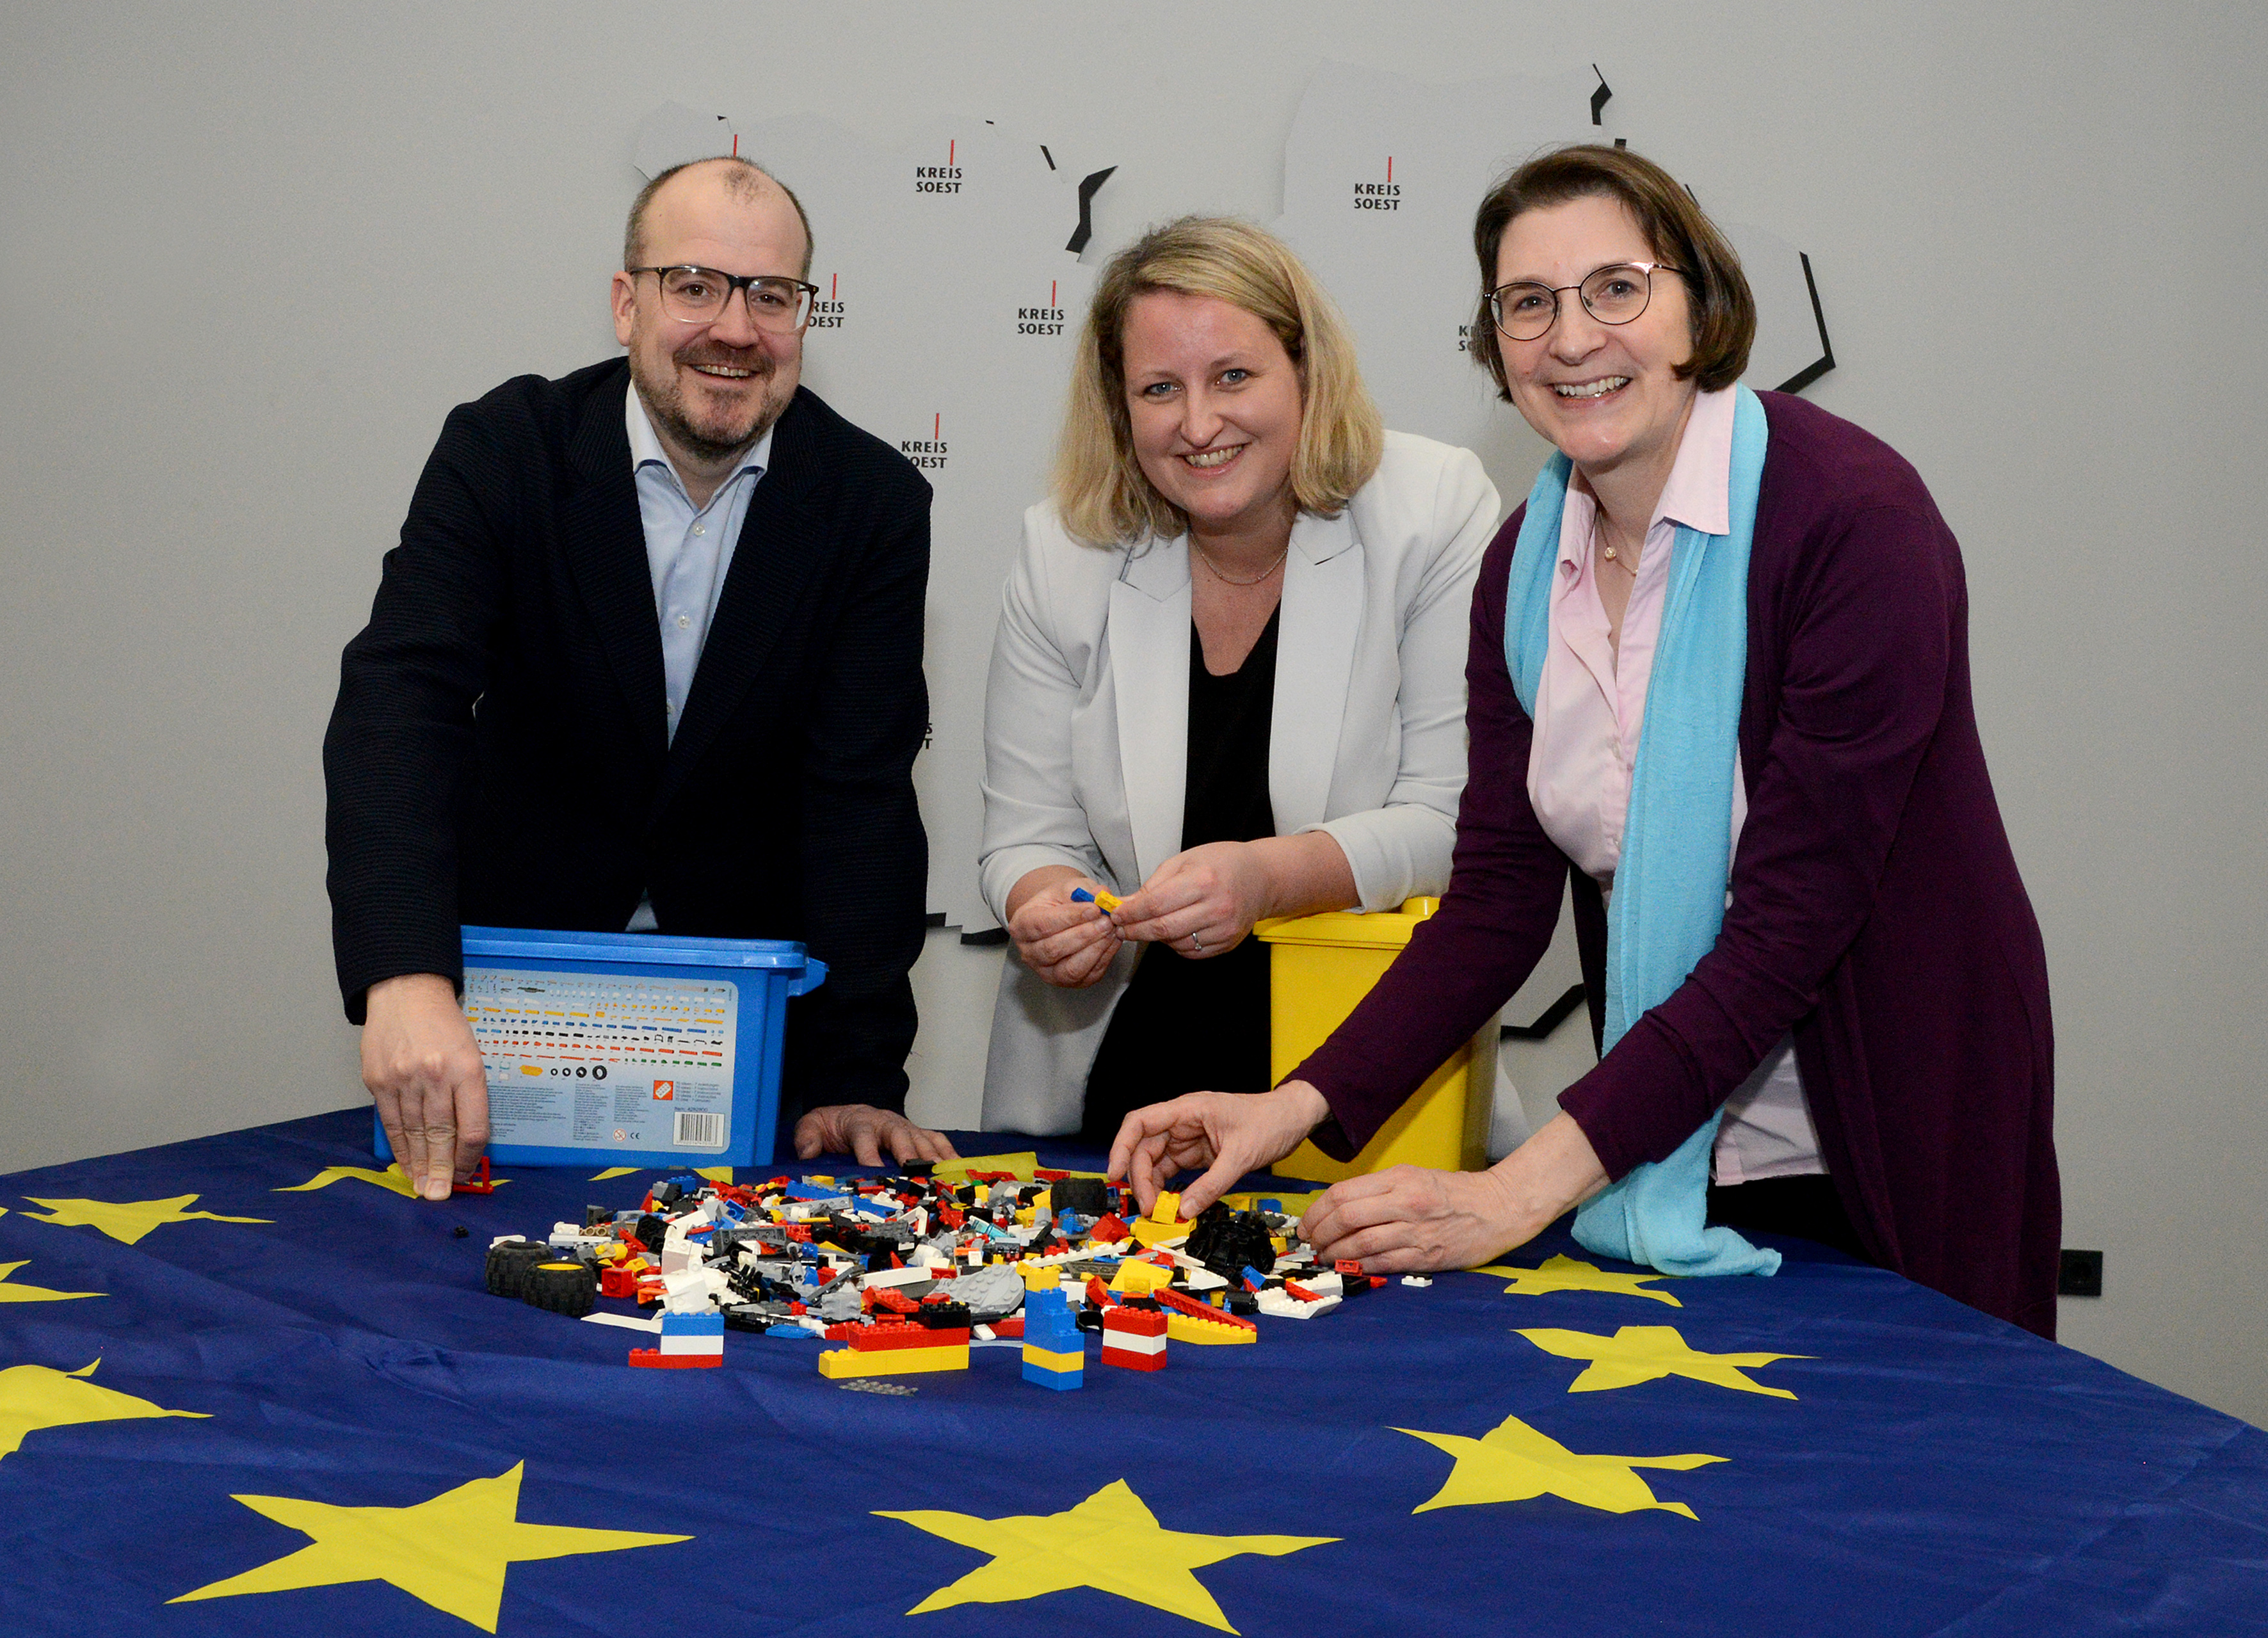 Ein friedliches Europa aus Lego®-Steinen - Projekt baut Brücken zwischen Generationen und kulturellen Gruppen – Bis 13. März anmelden